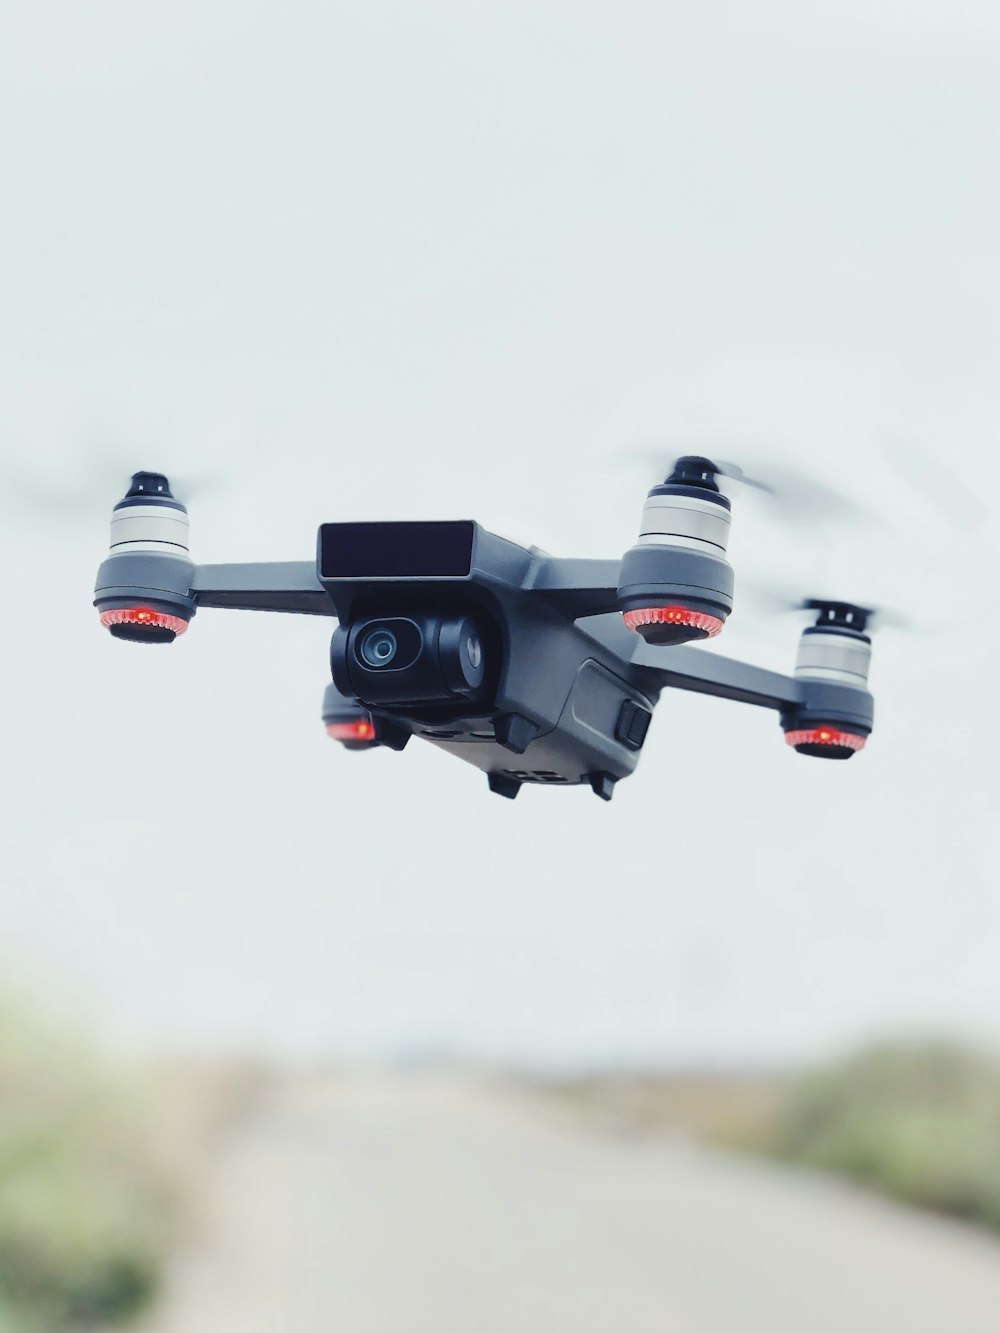 Zeitrafferfotografie einer Drohne im Flug